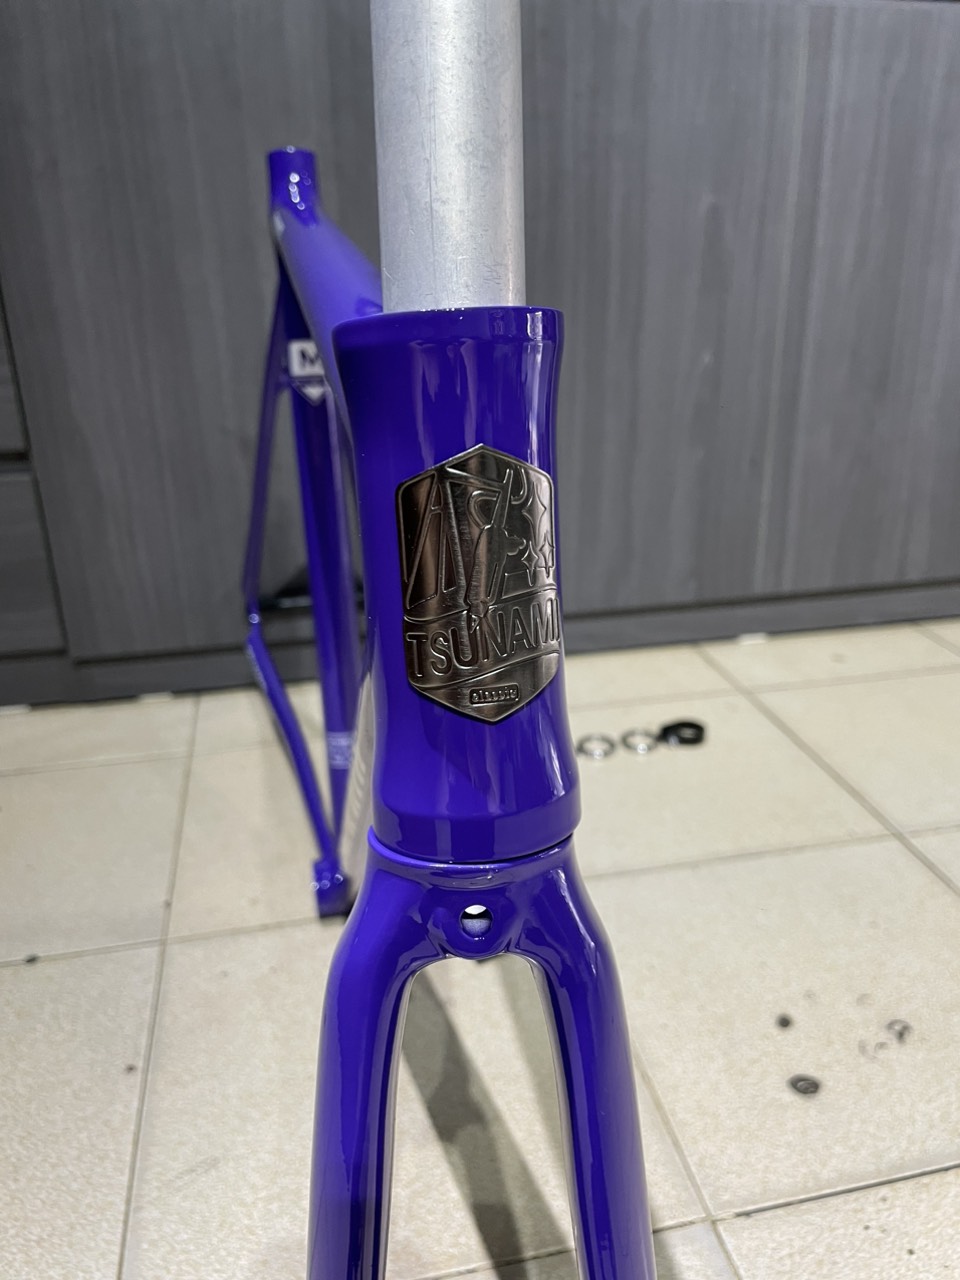 Khung sườn xe đạp Fixed Gear Tsunami SNM100 Purple